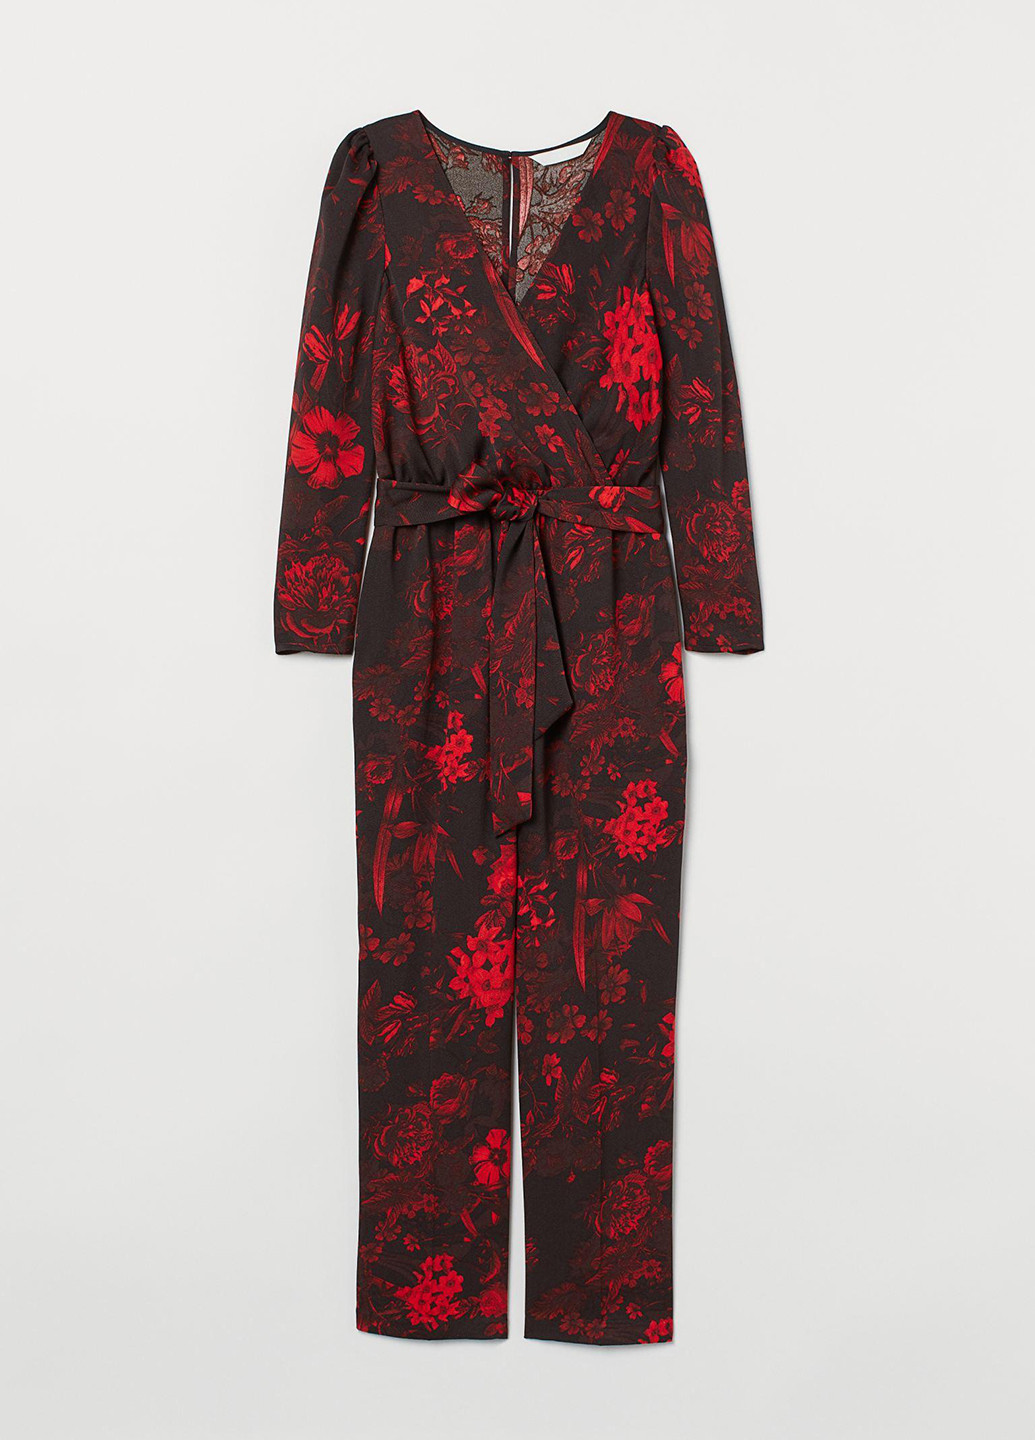 Комбинезон демисезон,черный в красные узоры, H&M цветочный чёрный